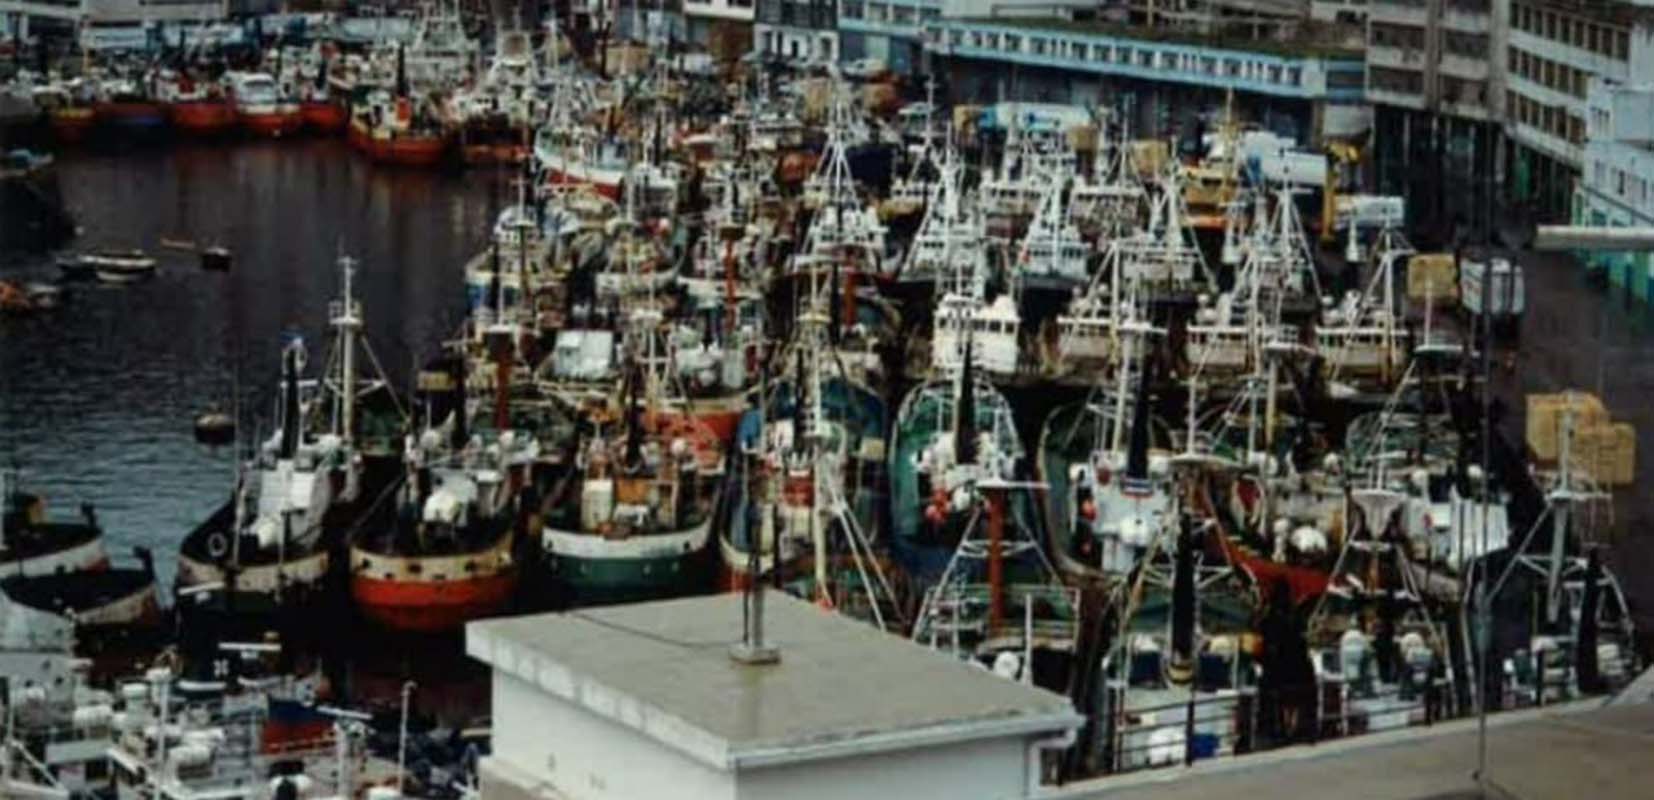 La flota de Ondarroa en los años 90 era una de las más grandes del país